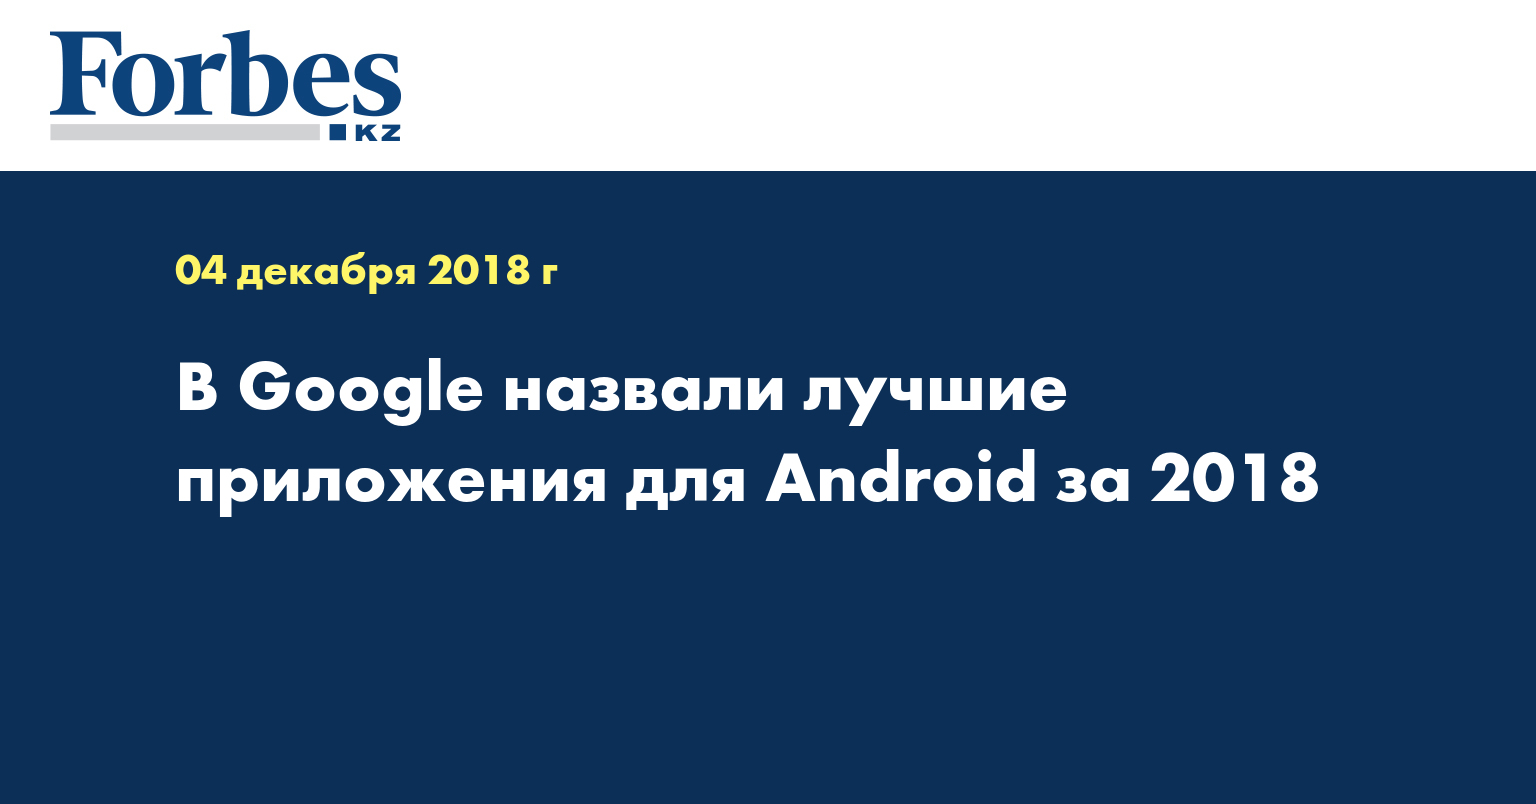 В Google назвали лучшие приложения для Android за 2018 